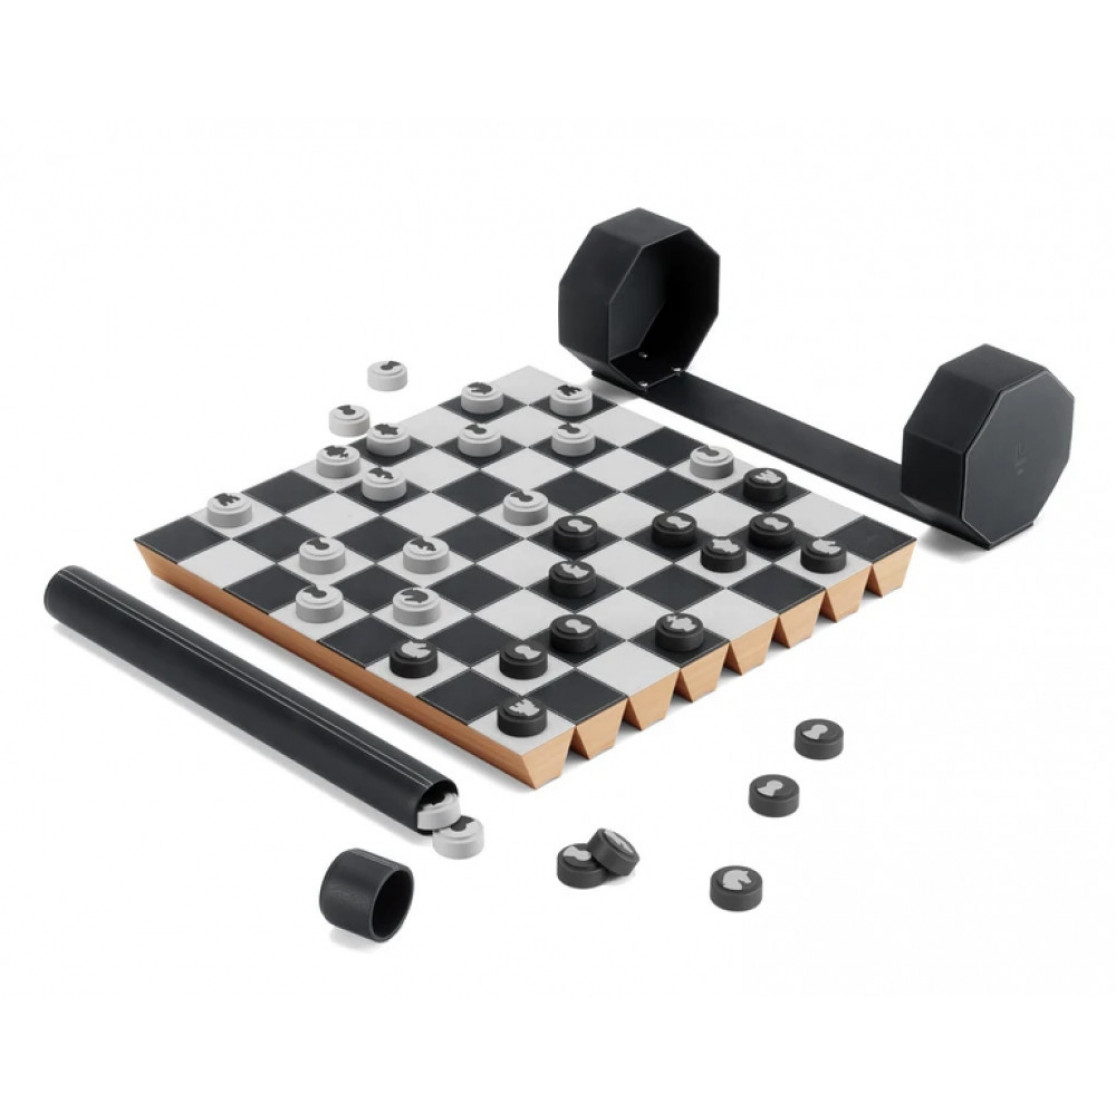 Início do jogo de damas de xadrez na placa de madeira